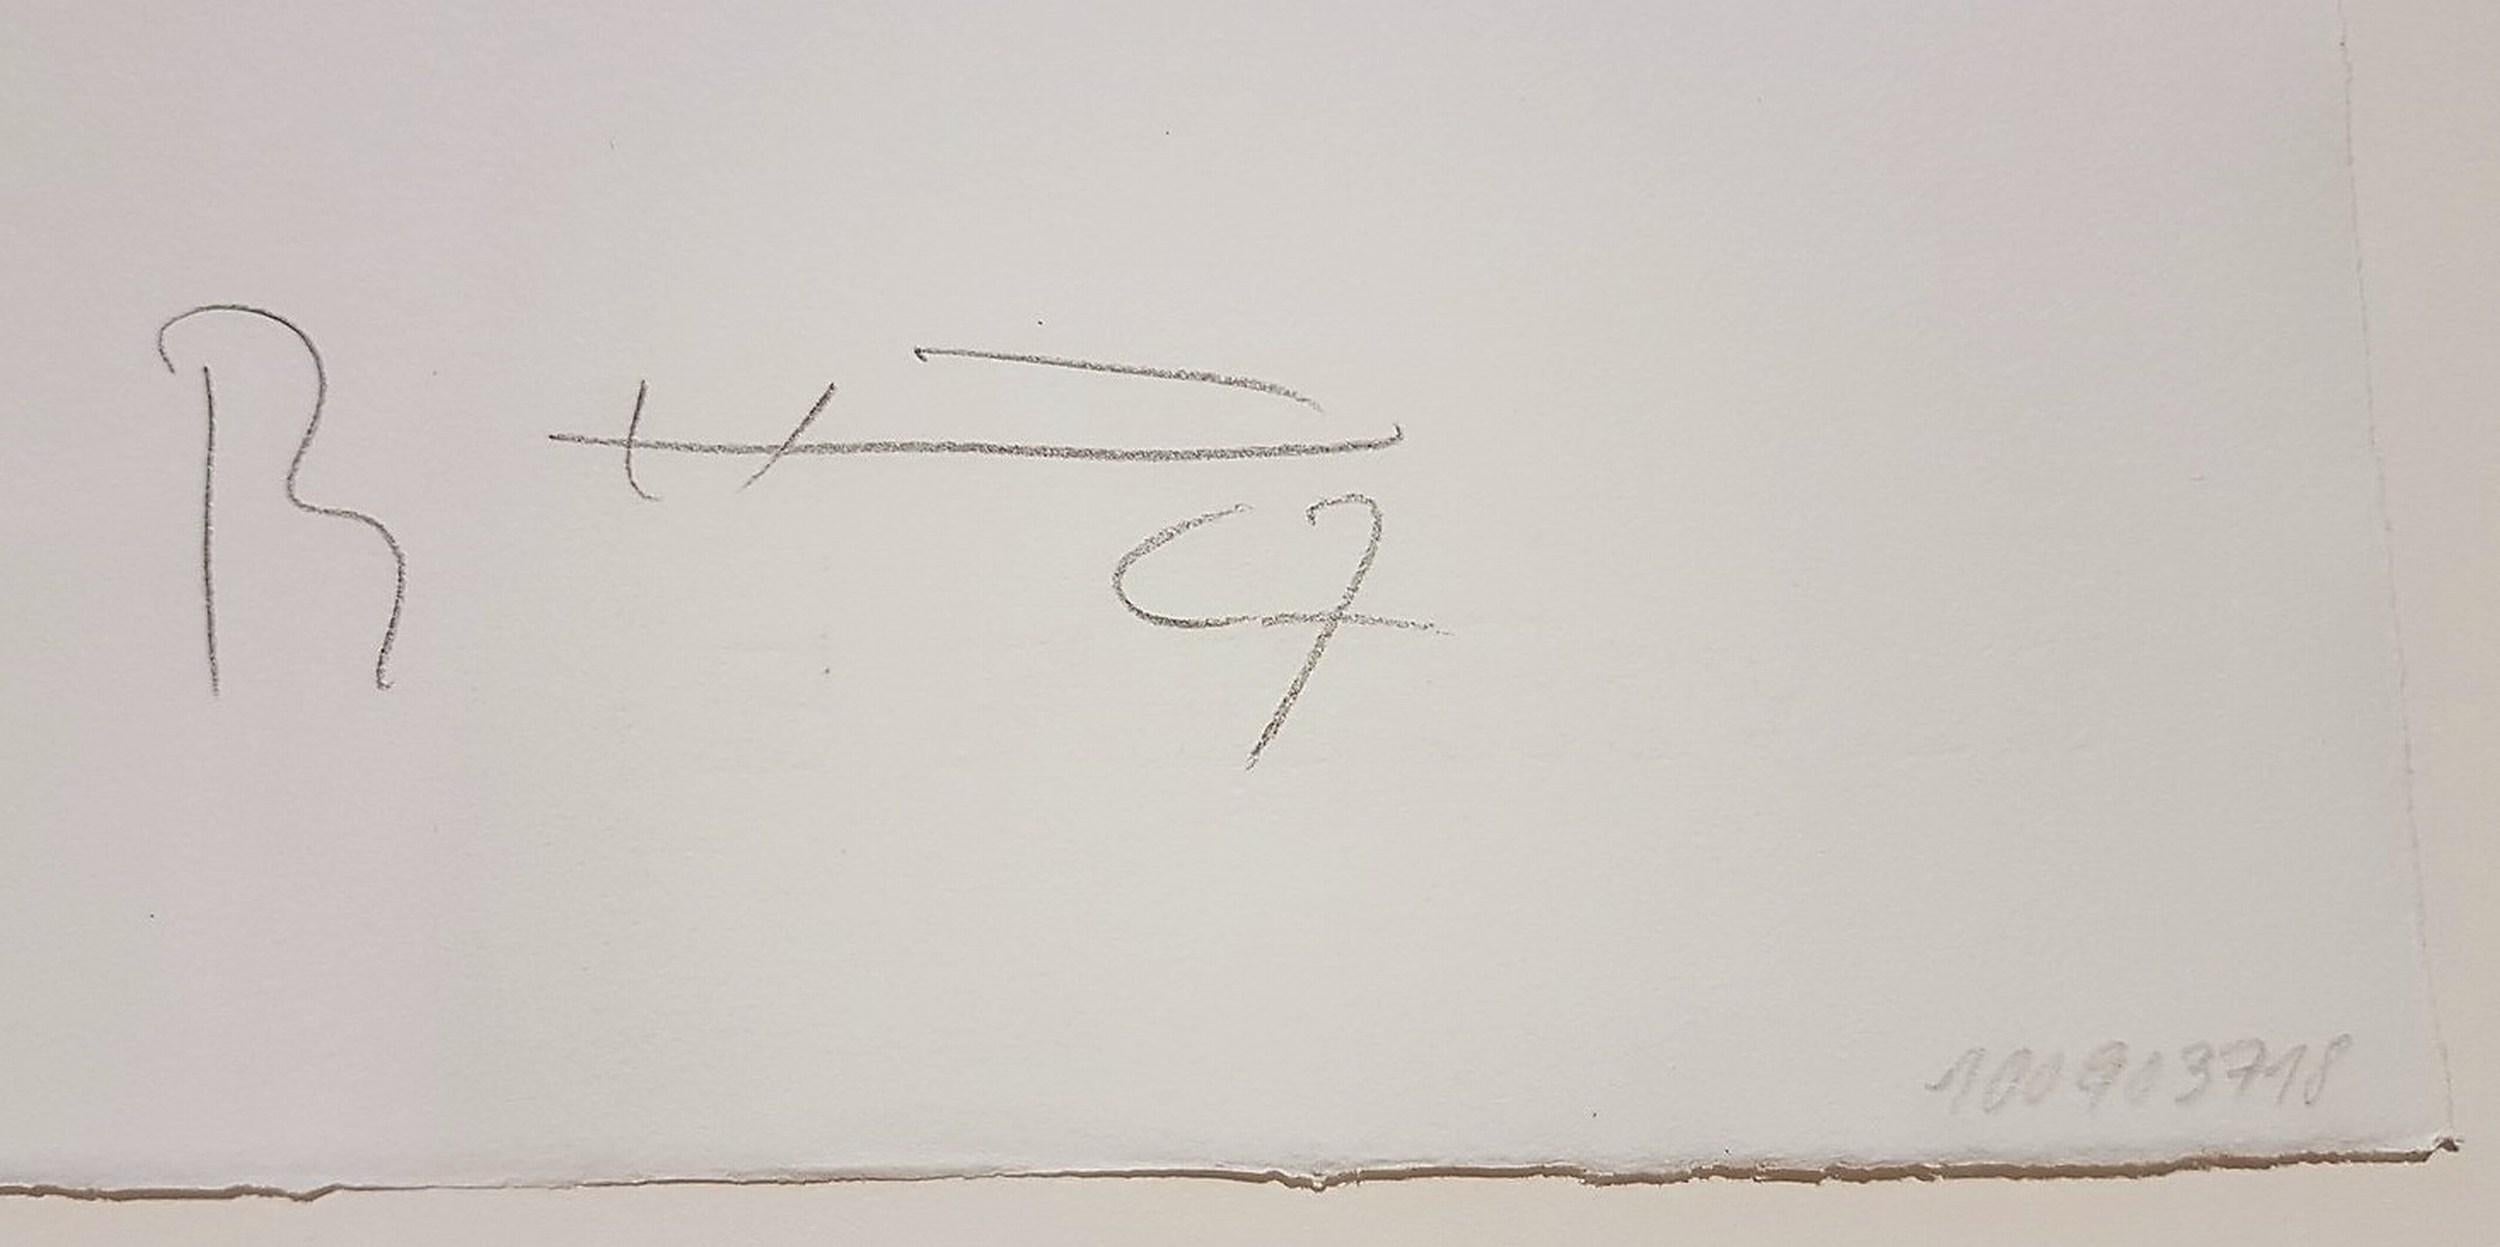 Bernhard Heiliger
Abstraction gestuelle sans titre
Lithographie sur BK Rives
Année : 1967
Signé et numéroté 